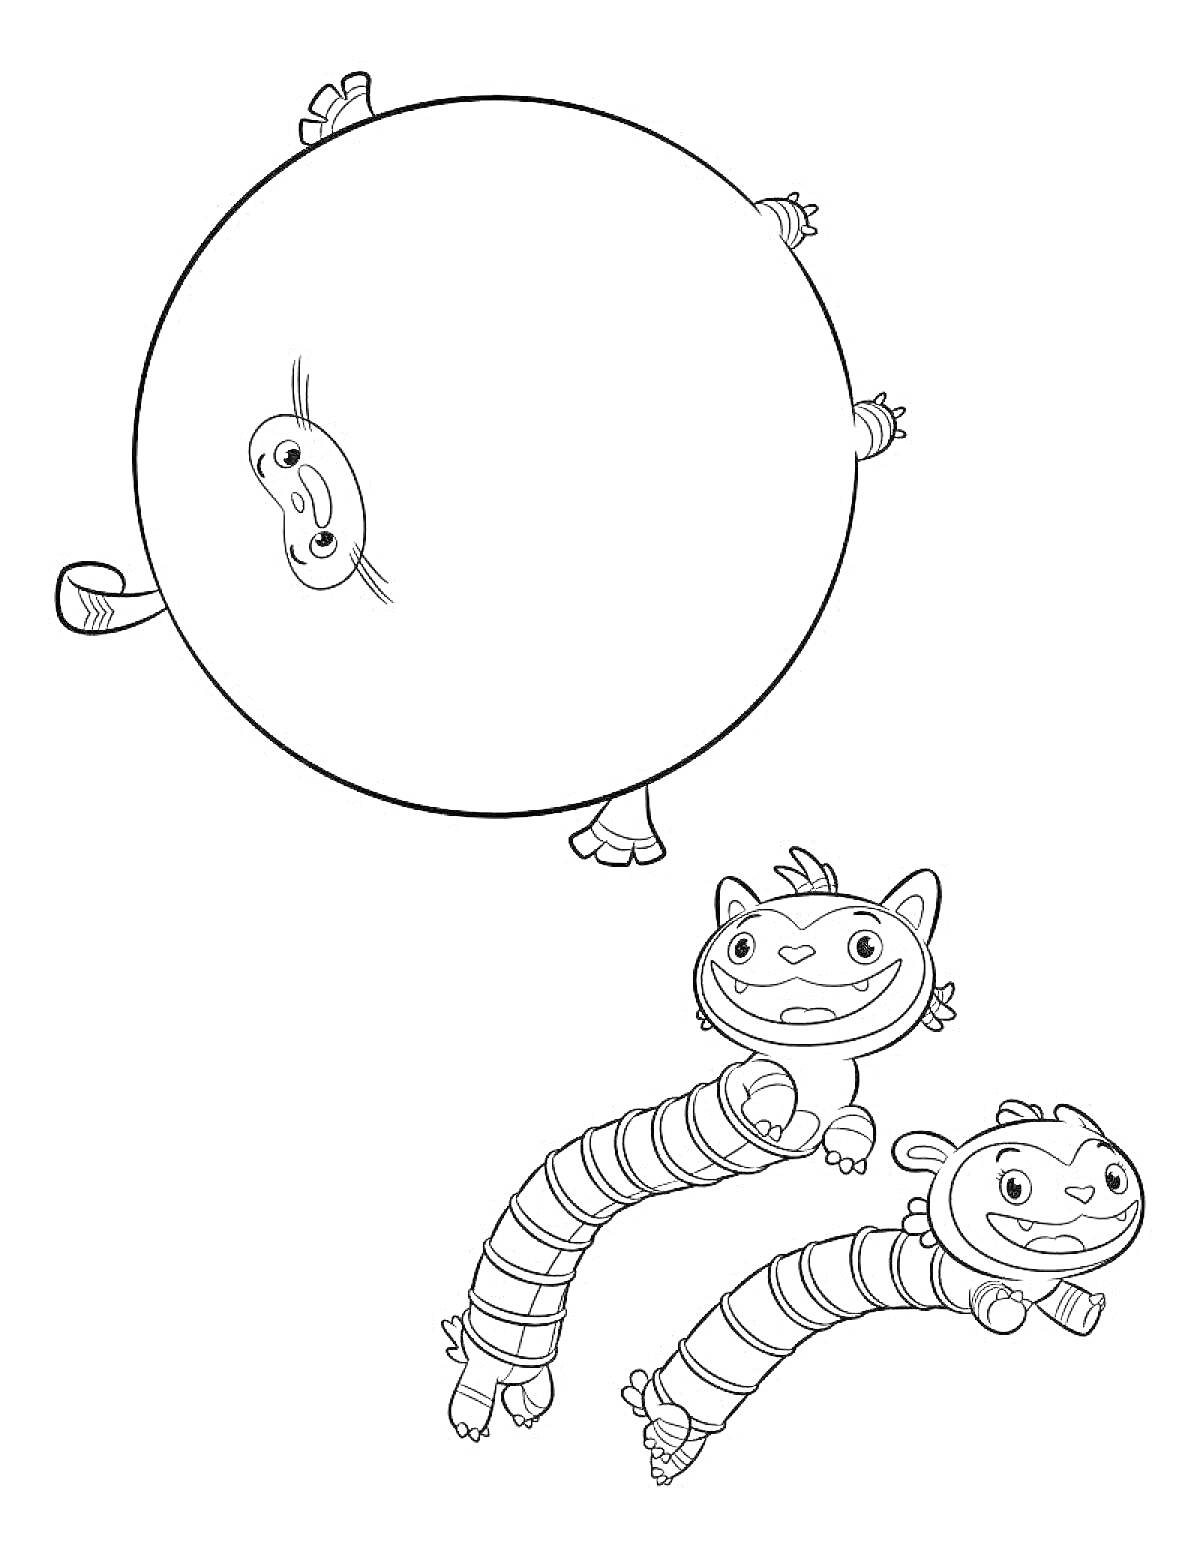 Раскраска Большой круглый персонаж с улыбкой и двумя летающими существами с ушками и торчащими лапками